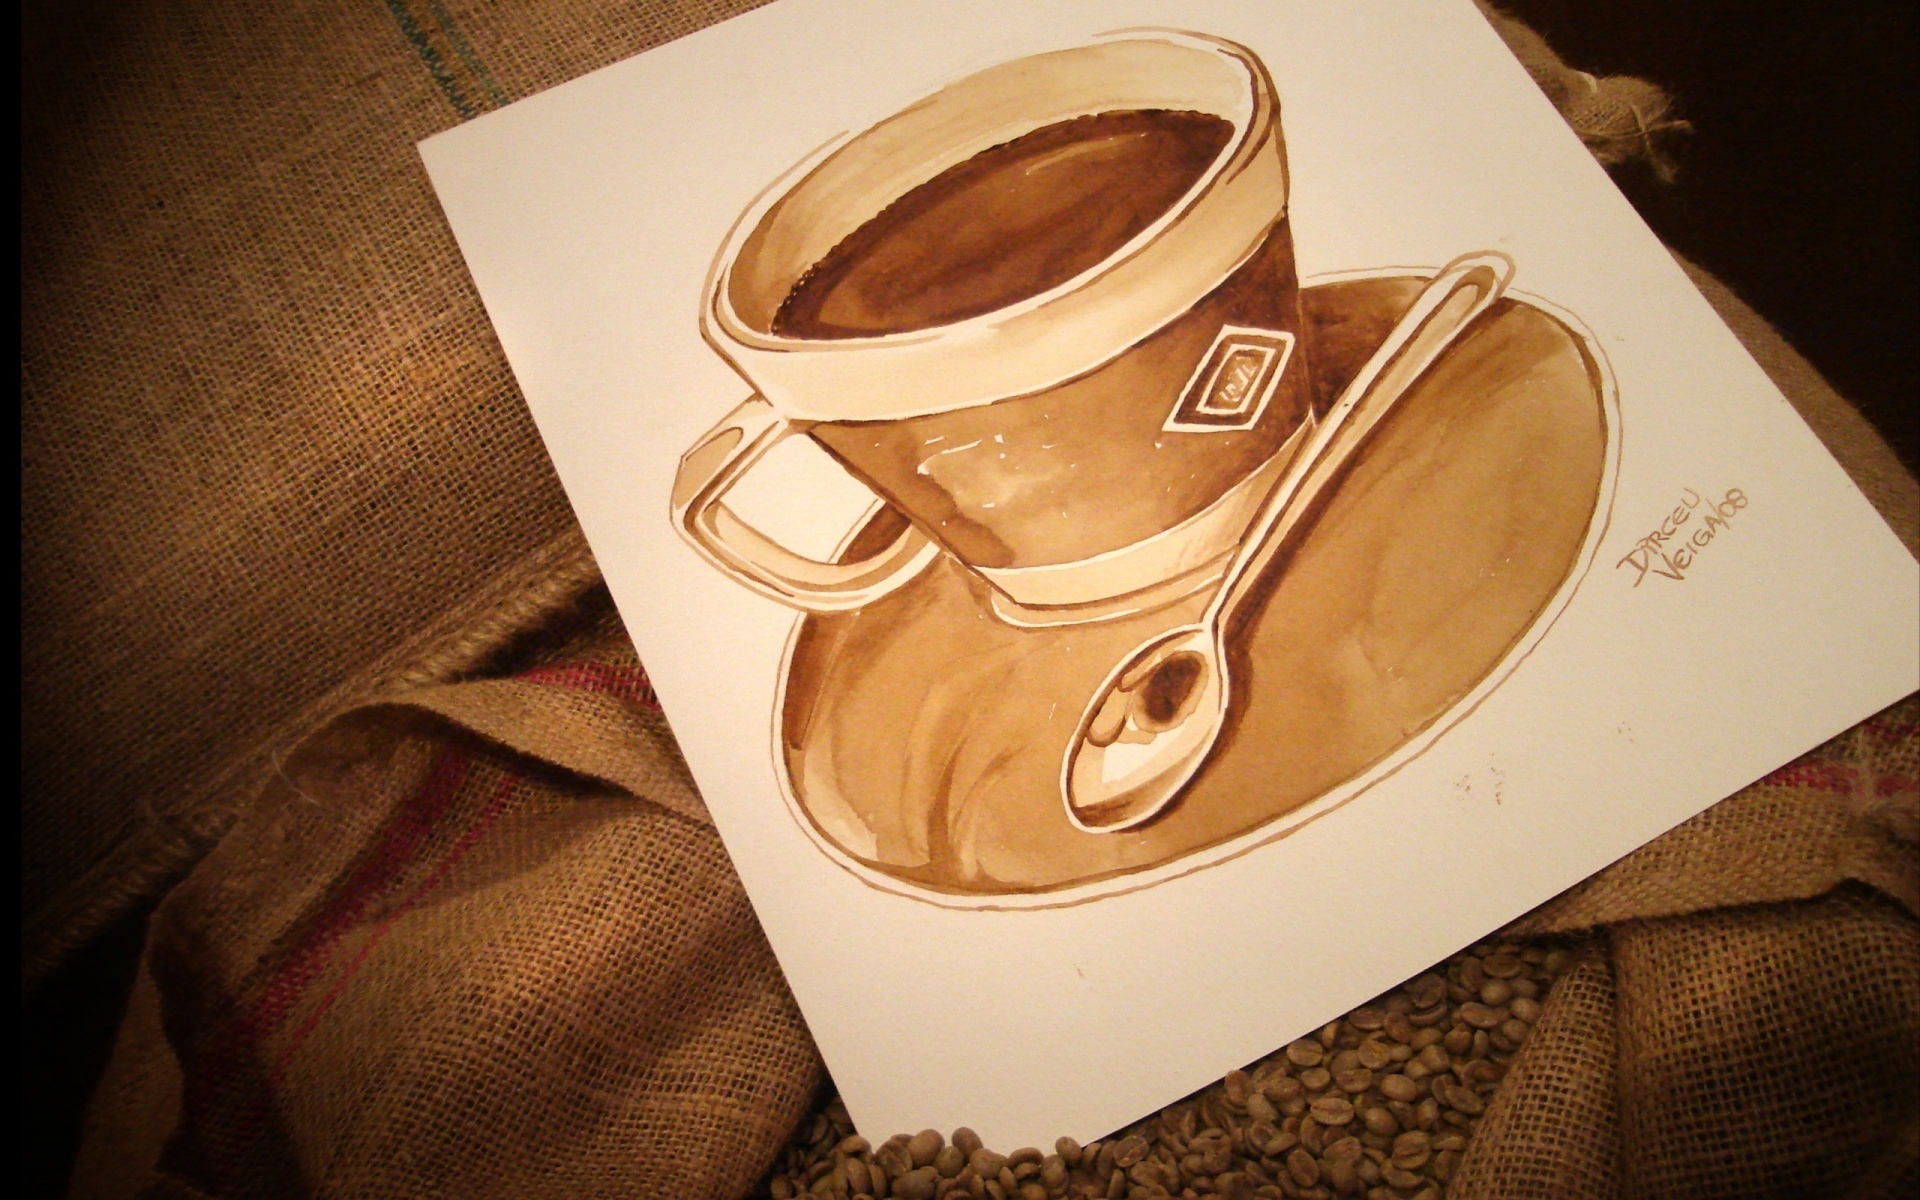 Картинки рисунок, чашка, кофе, кофе в зернах фото и обои на рабочий стол